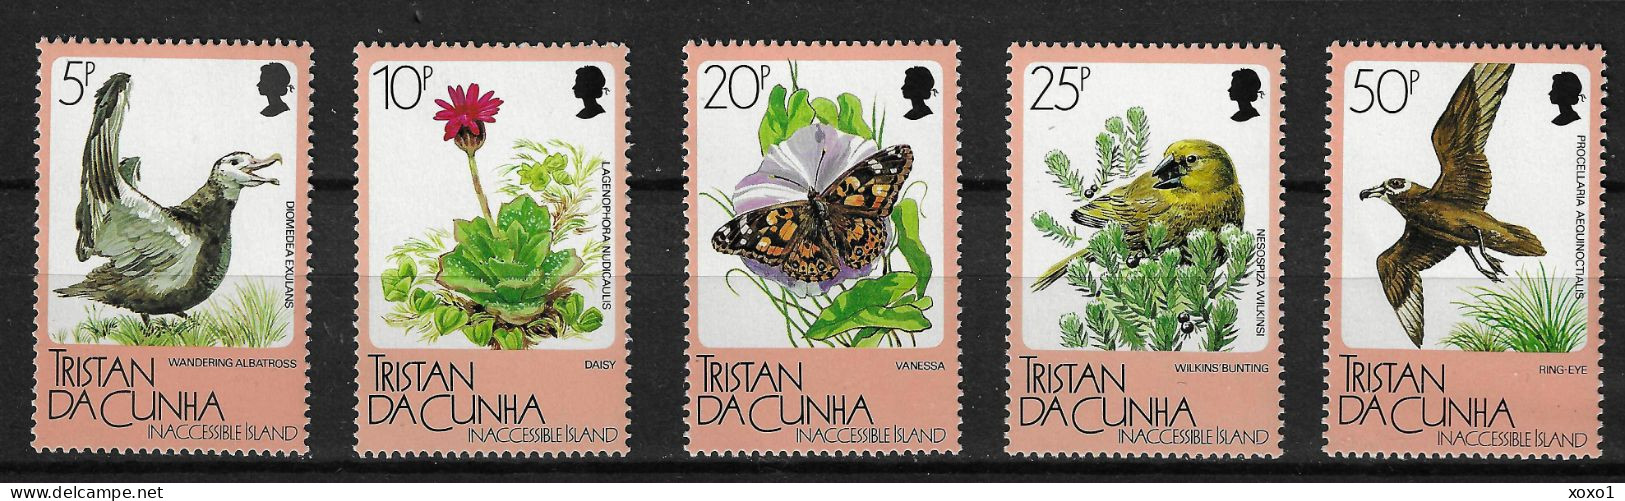 Tristan Da Cunha 1986 MiNr. 412 - 416 Inaccessible Island  Birds, Butterfies, Flowers  5v  MNH** 7.50€ - Albatrosse & Sturmvögel